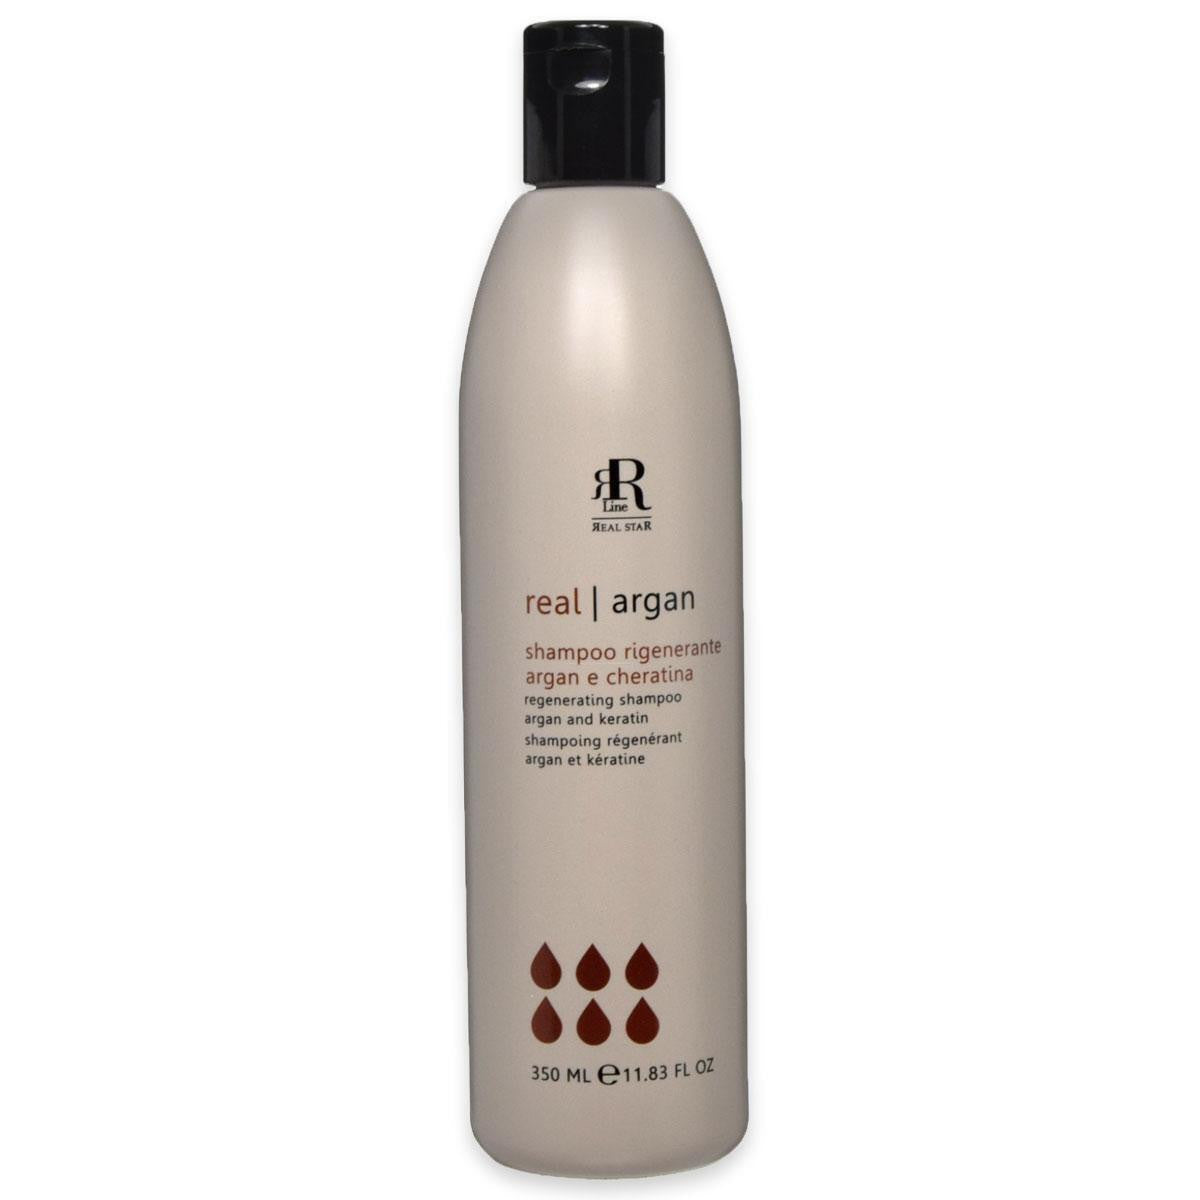 Shampoo Rigenerante ARGAN e CHERATINA 350 ml - REAL STAR